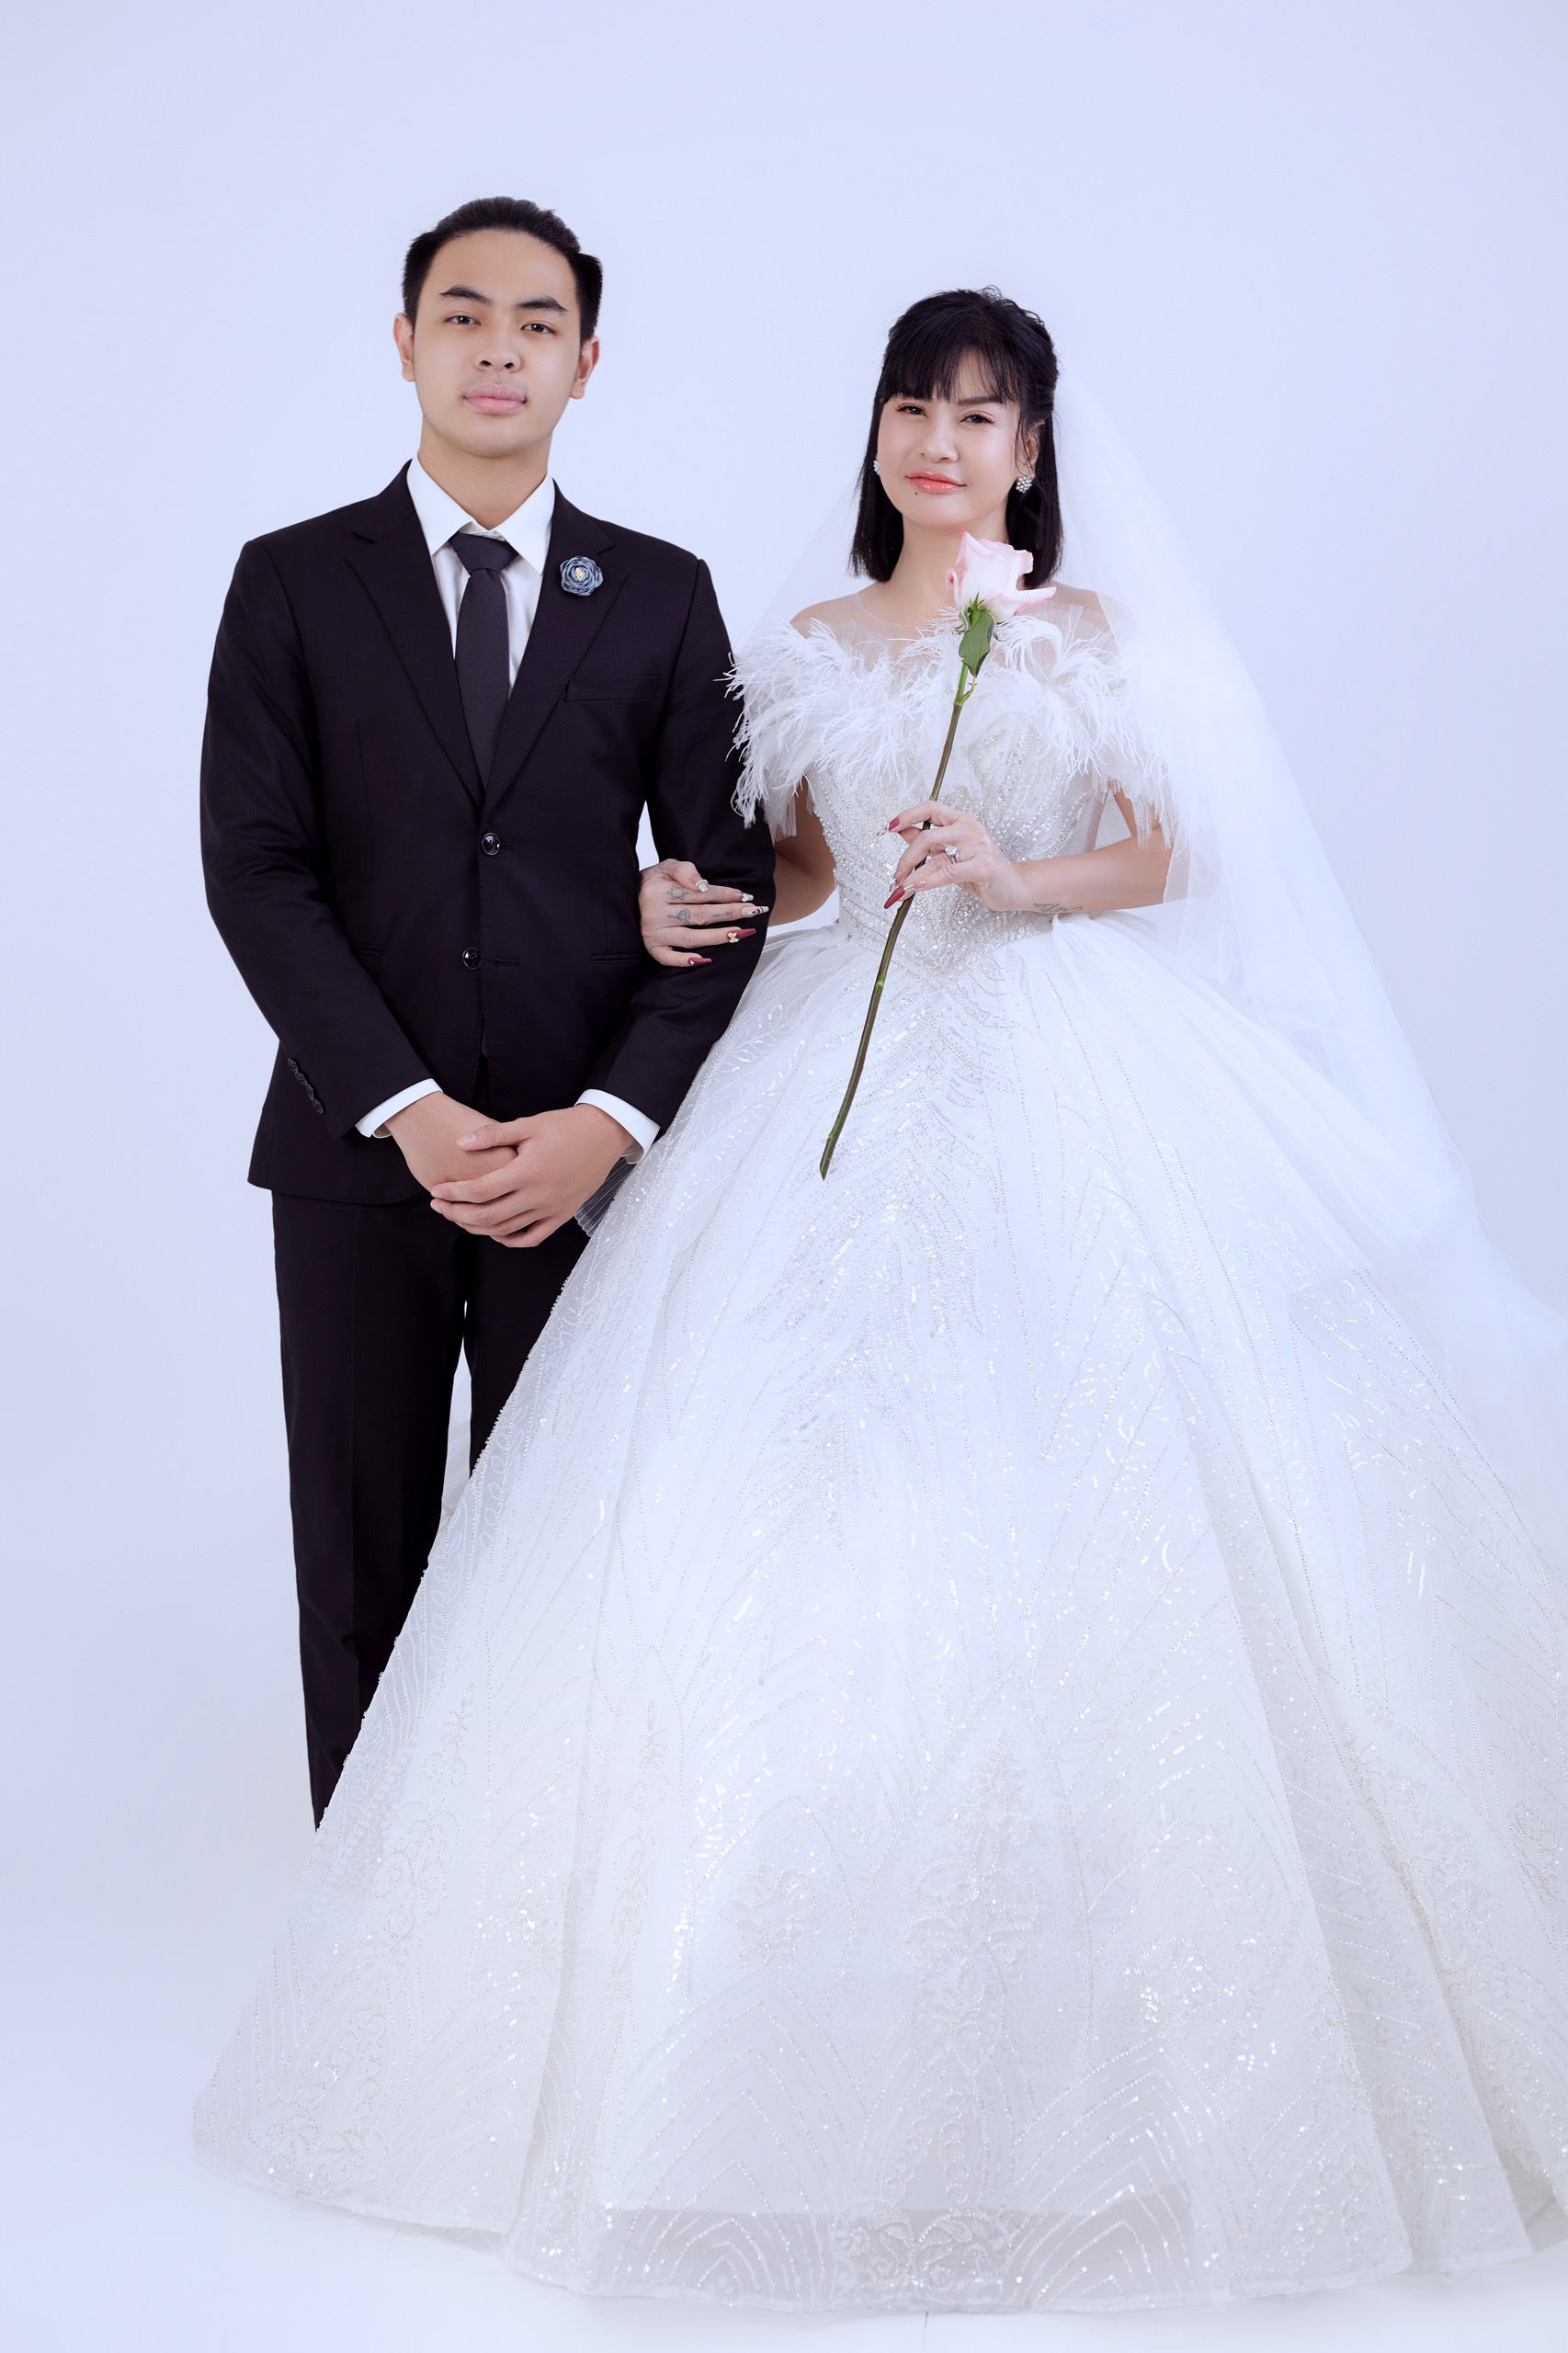 Cát Phượng: Cô dâu Cát Phượng chính là cái tên nổi tiếng nhất trong giới showbiz Việt. Nhân dịp cô ấy đã kết hôn, hãy cùng xem hình ảnh của lễ cưới của cô để nhận được những cảm xúc ấn tượng và lãng mạn.